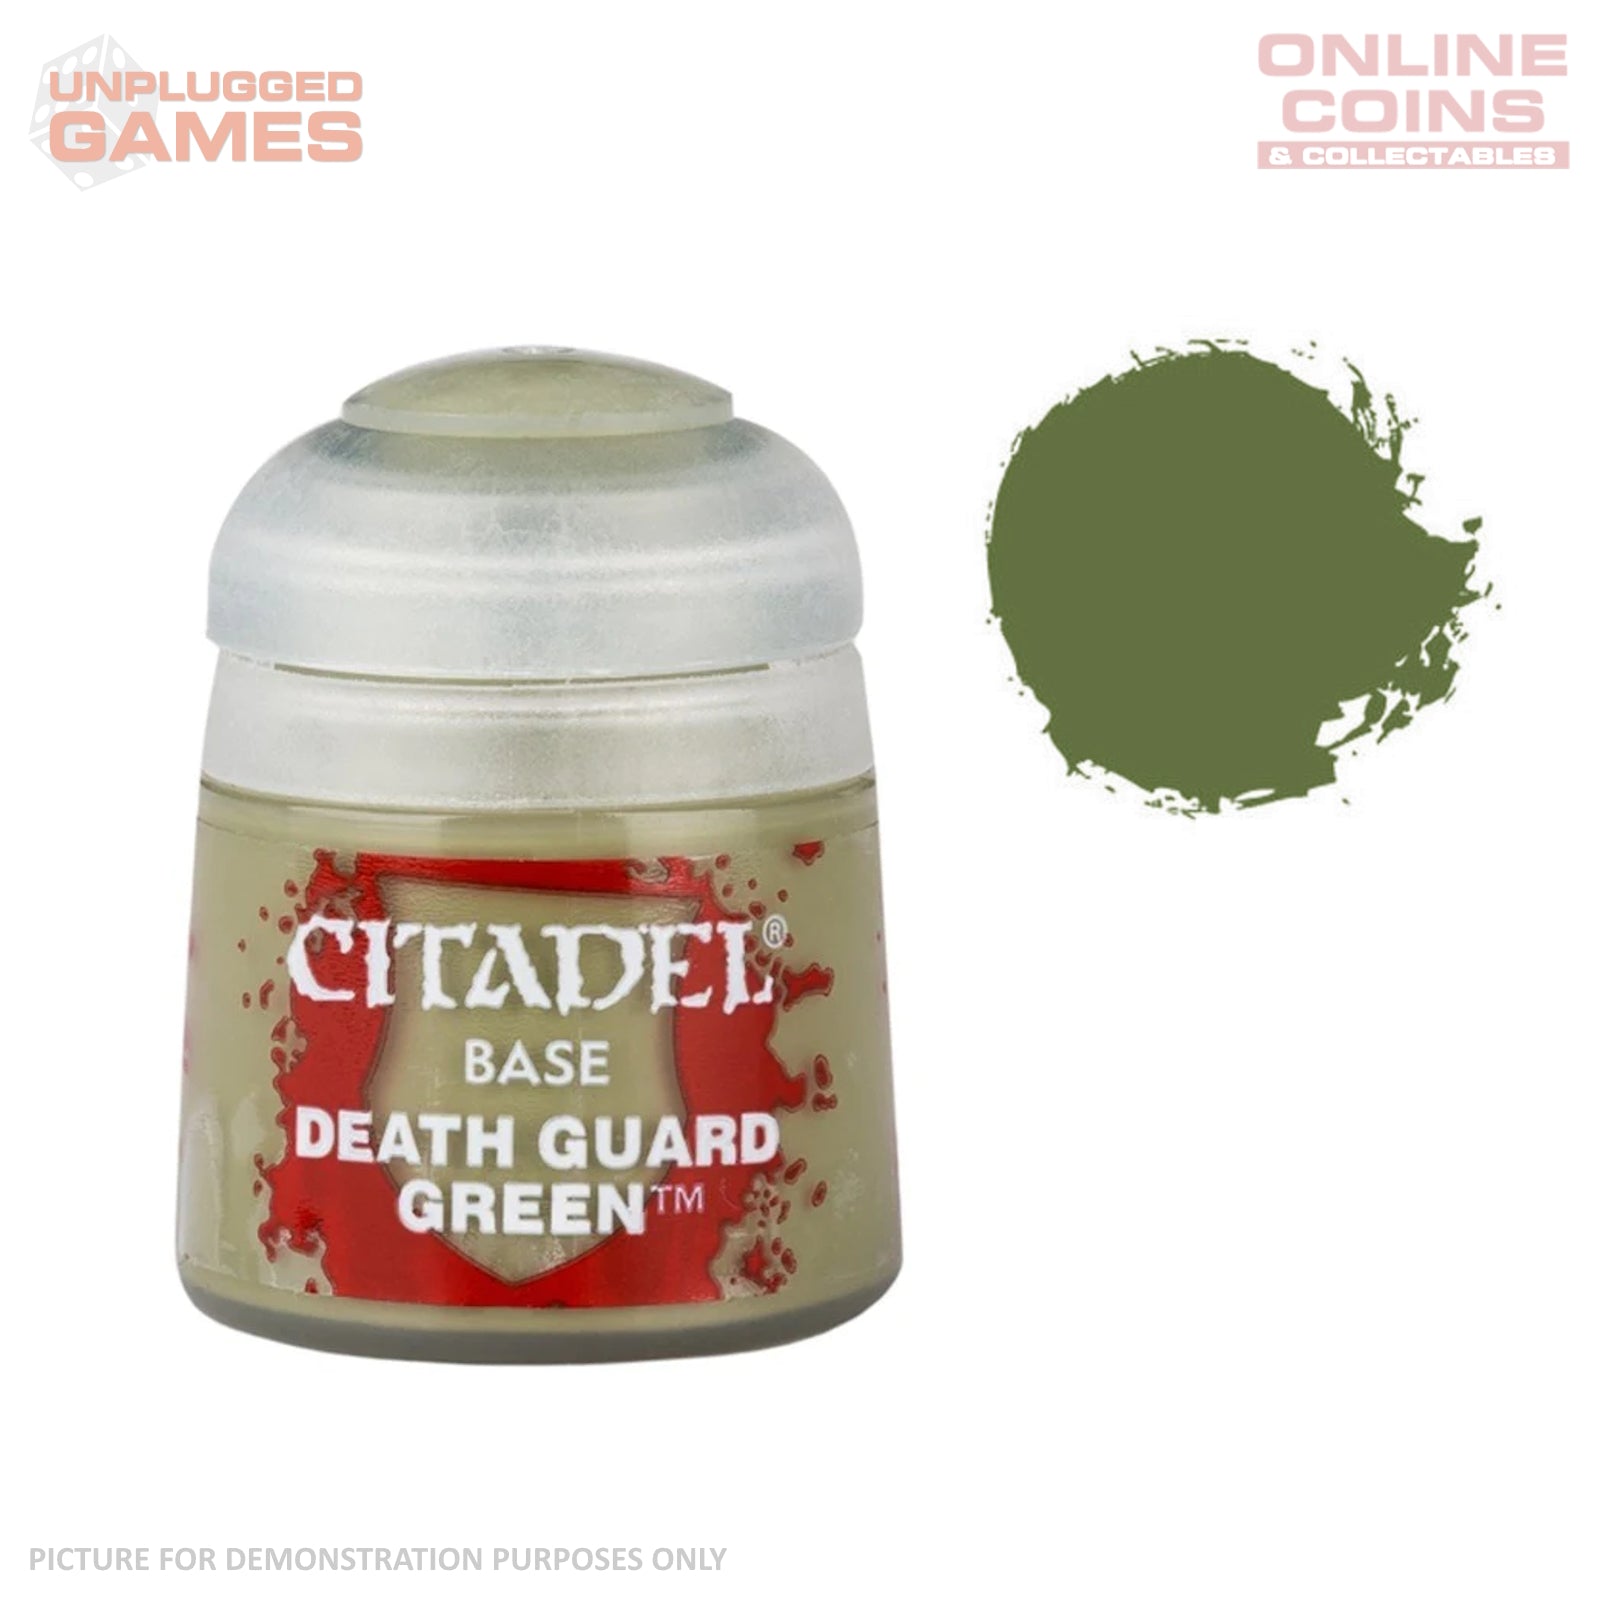 Citadel Base - 21-37 Death Guard Green